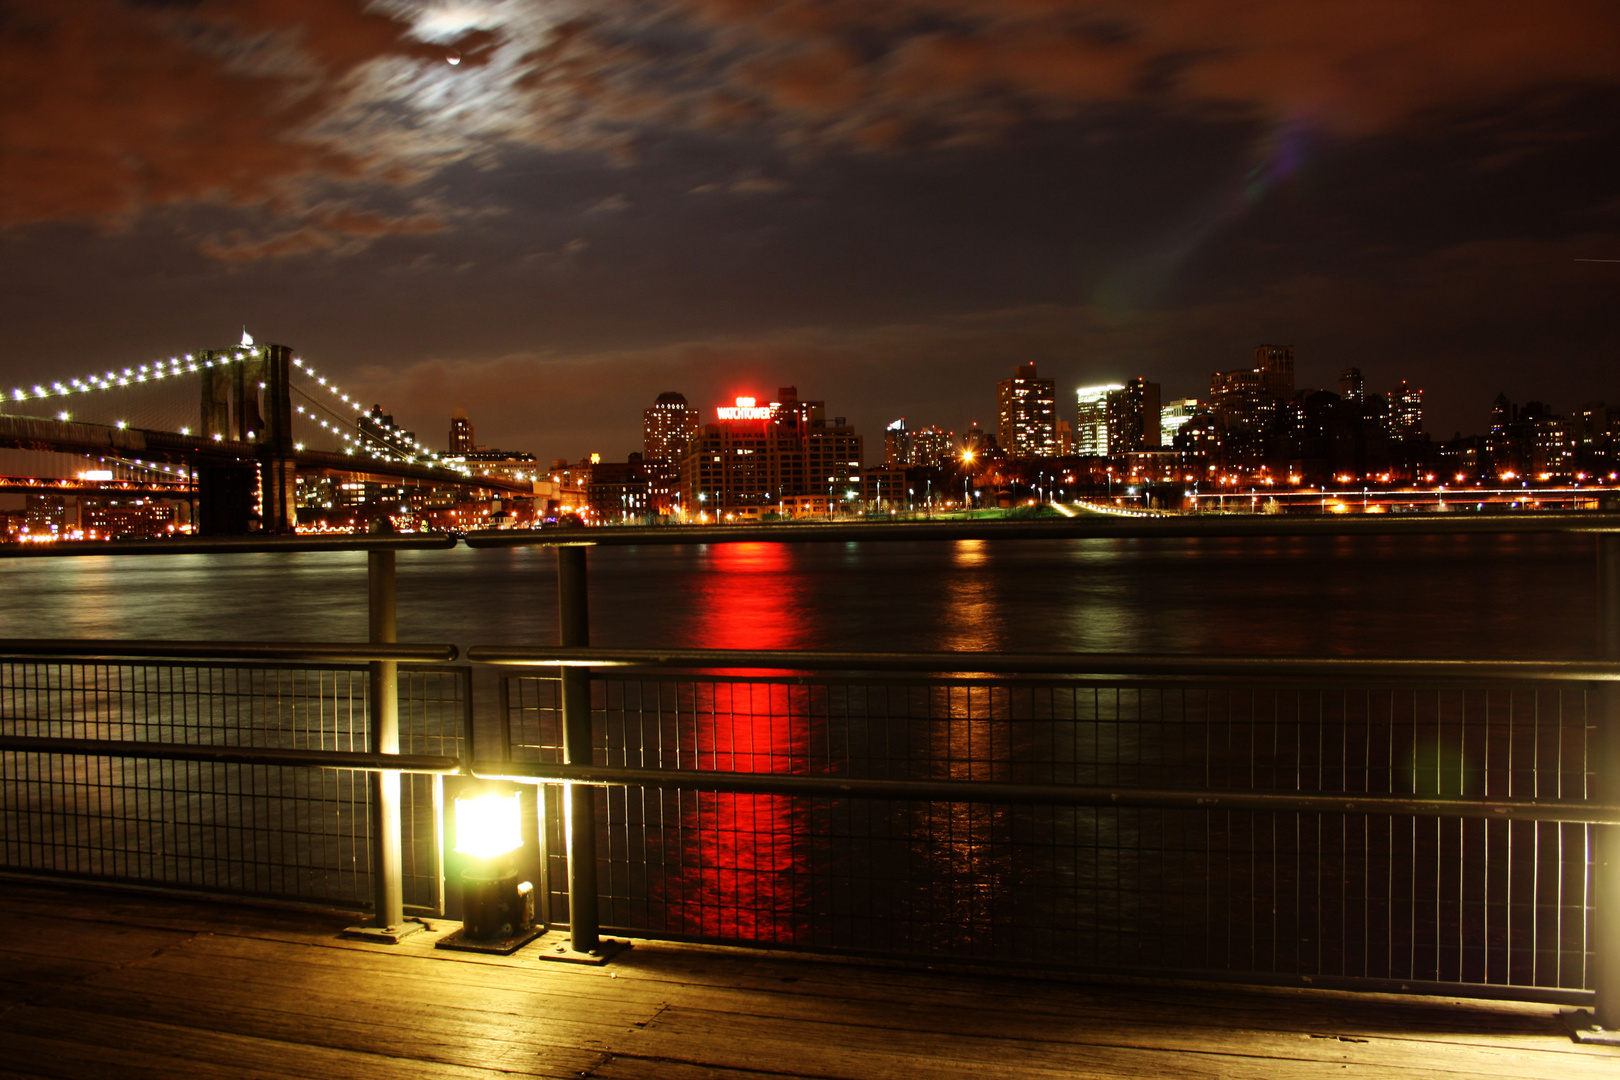 USA, NY, New York City - Brooklyn Bridge